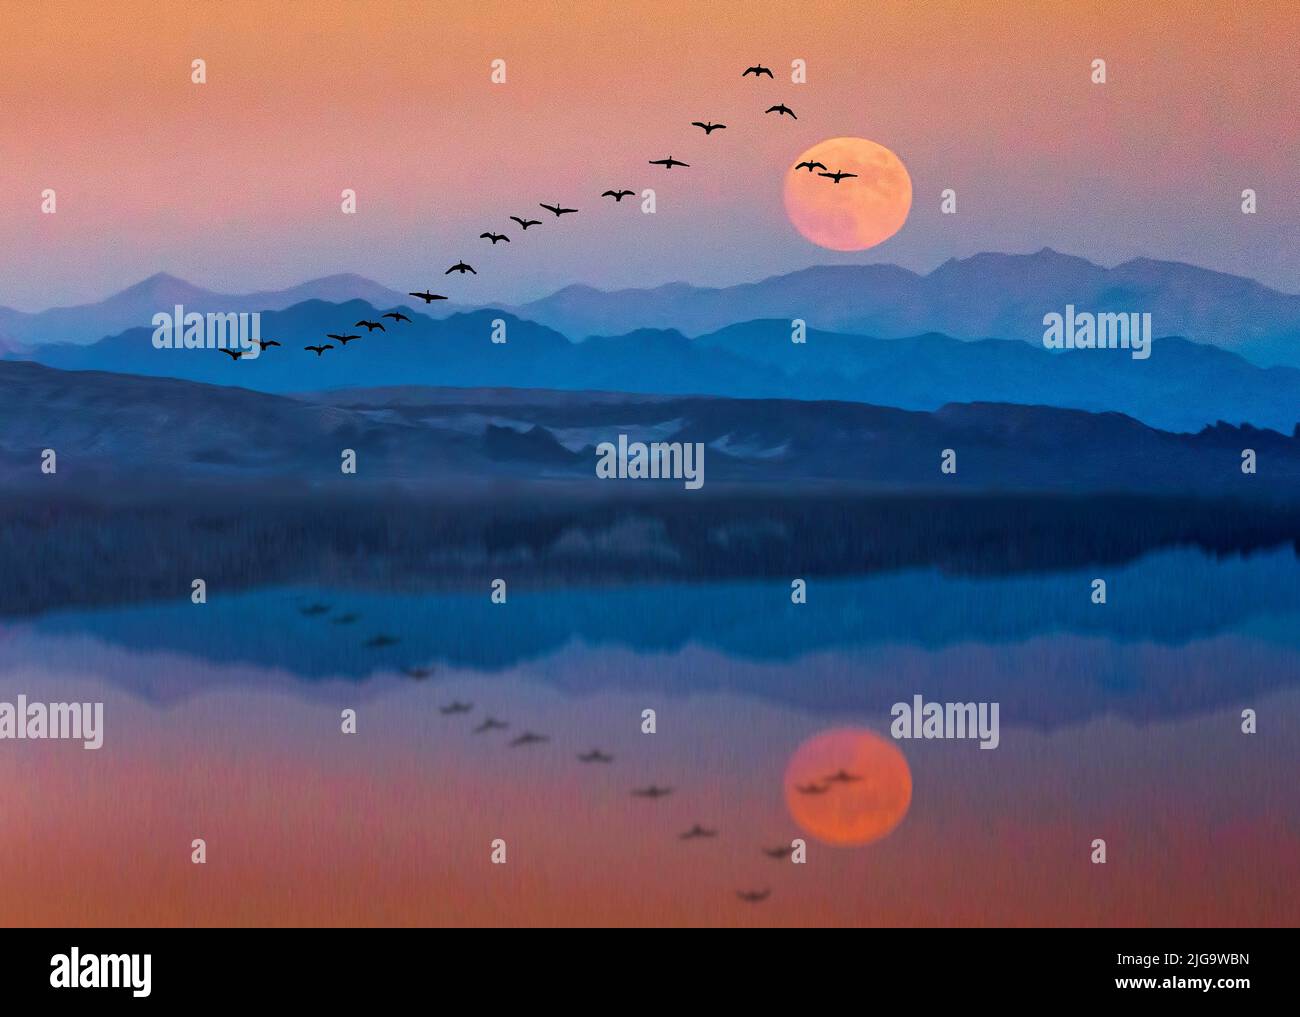 Los gansos migratorios se ven reflejados en un lago de montaña al atardecer en esta ilustración de 3. Foto de stock